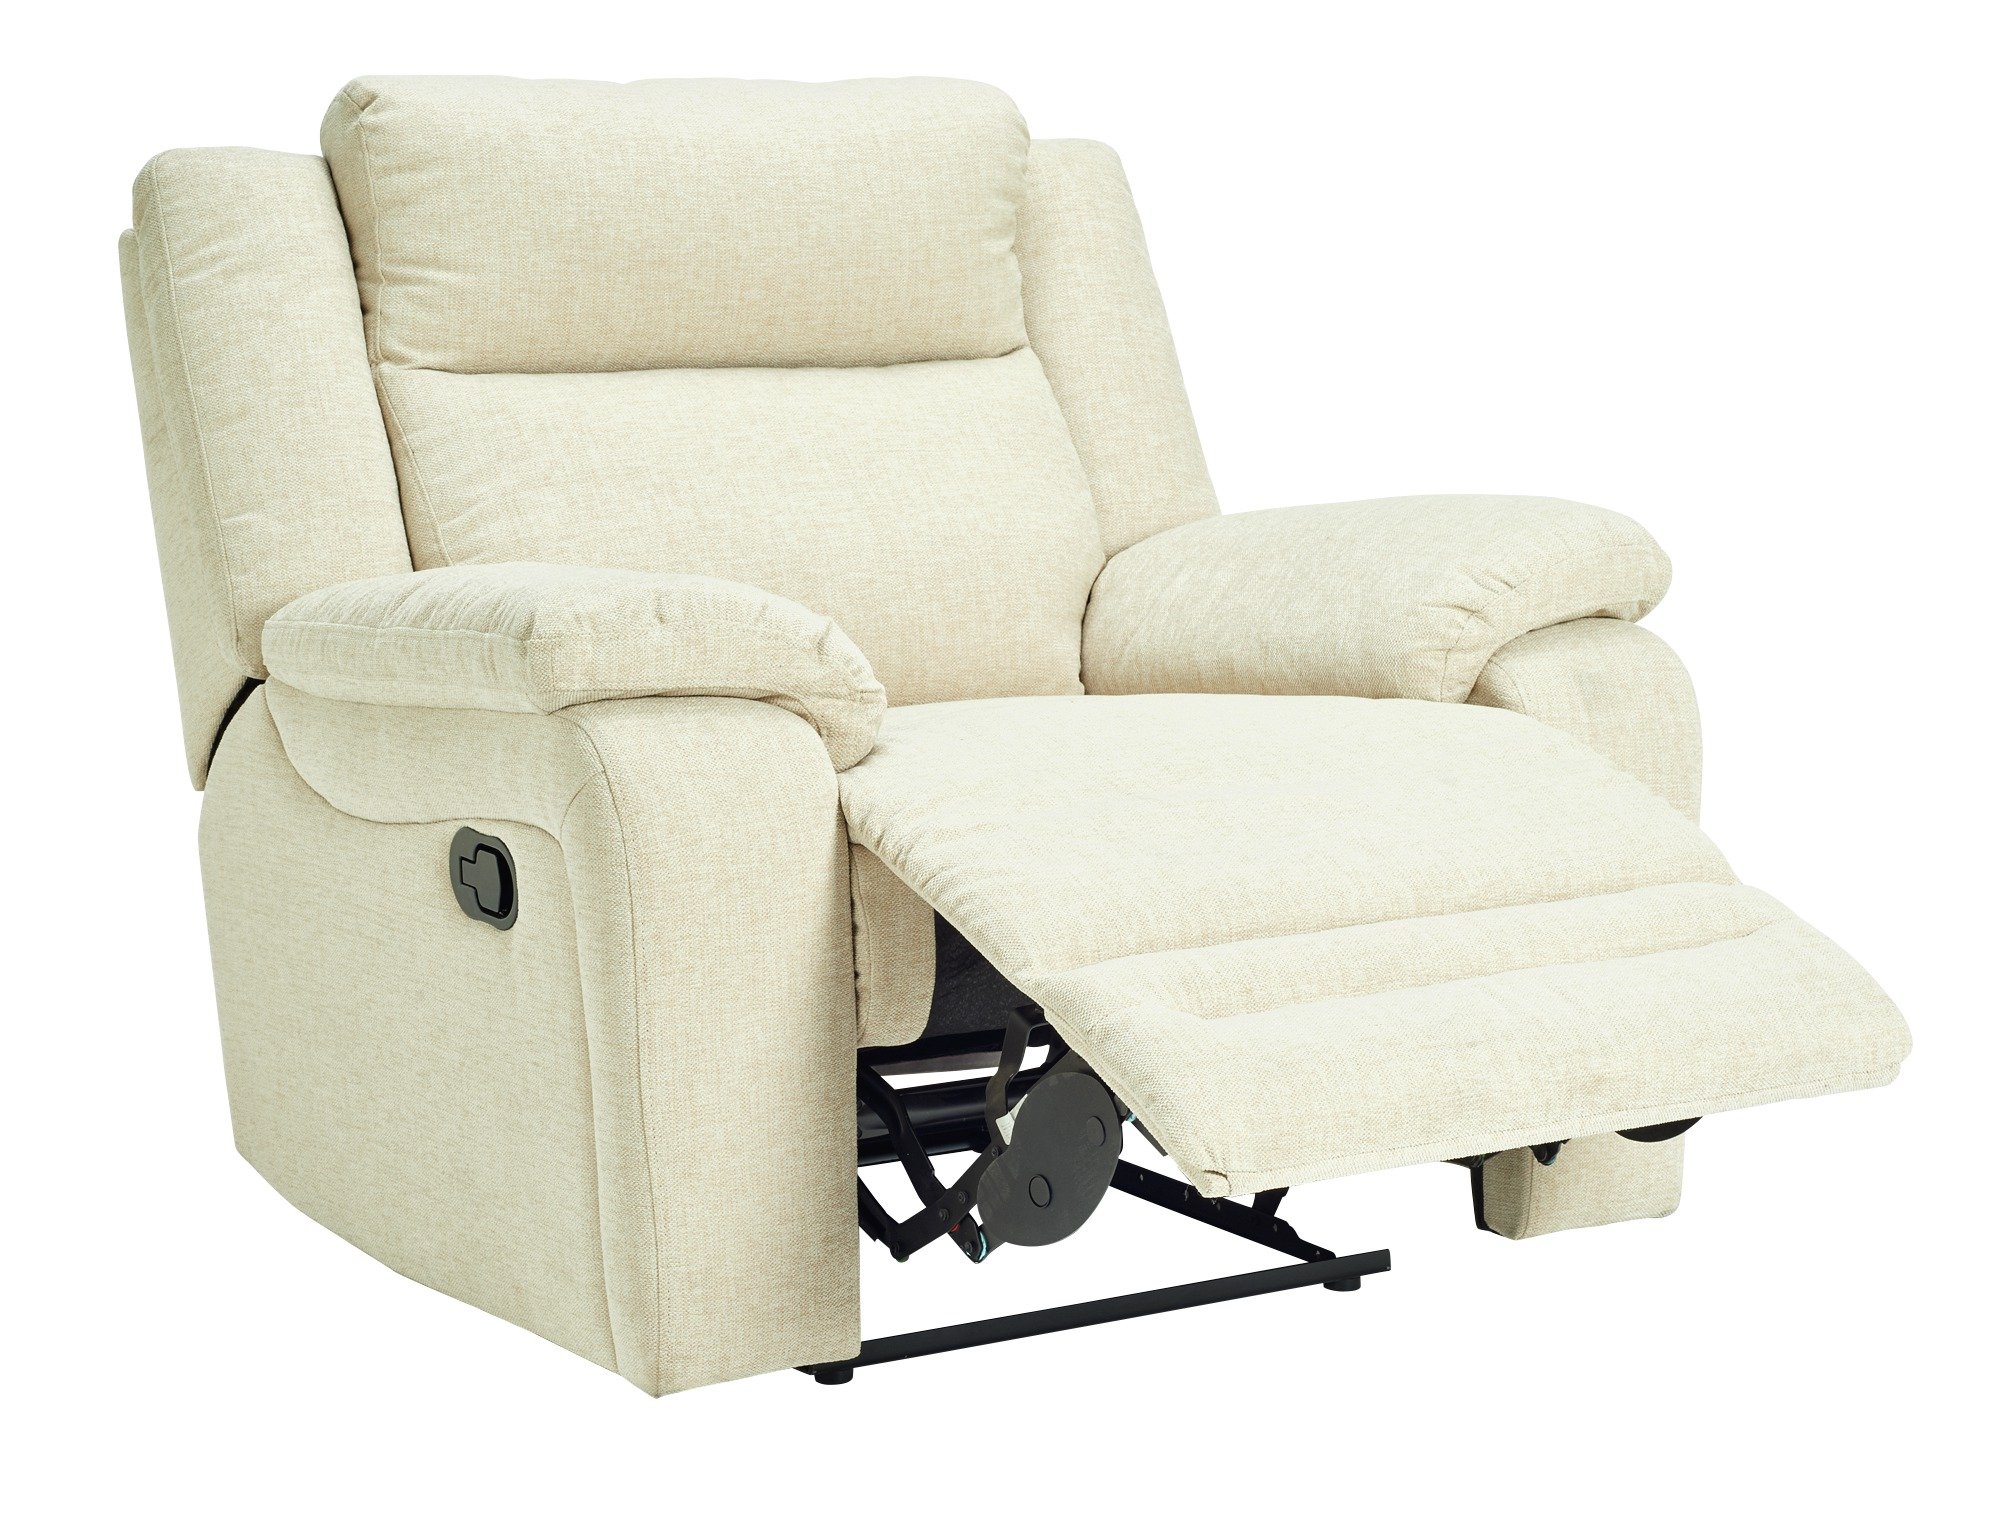 Argos Home Blake Fabric Manual Recliner Chair Reviews